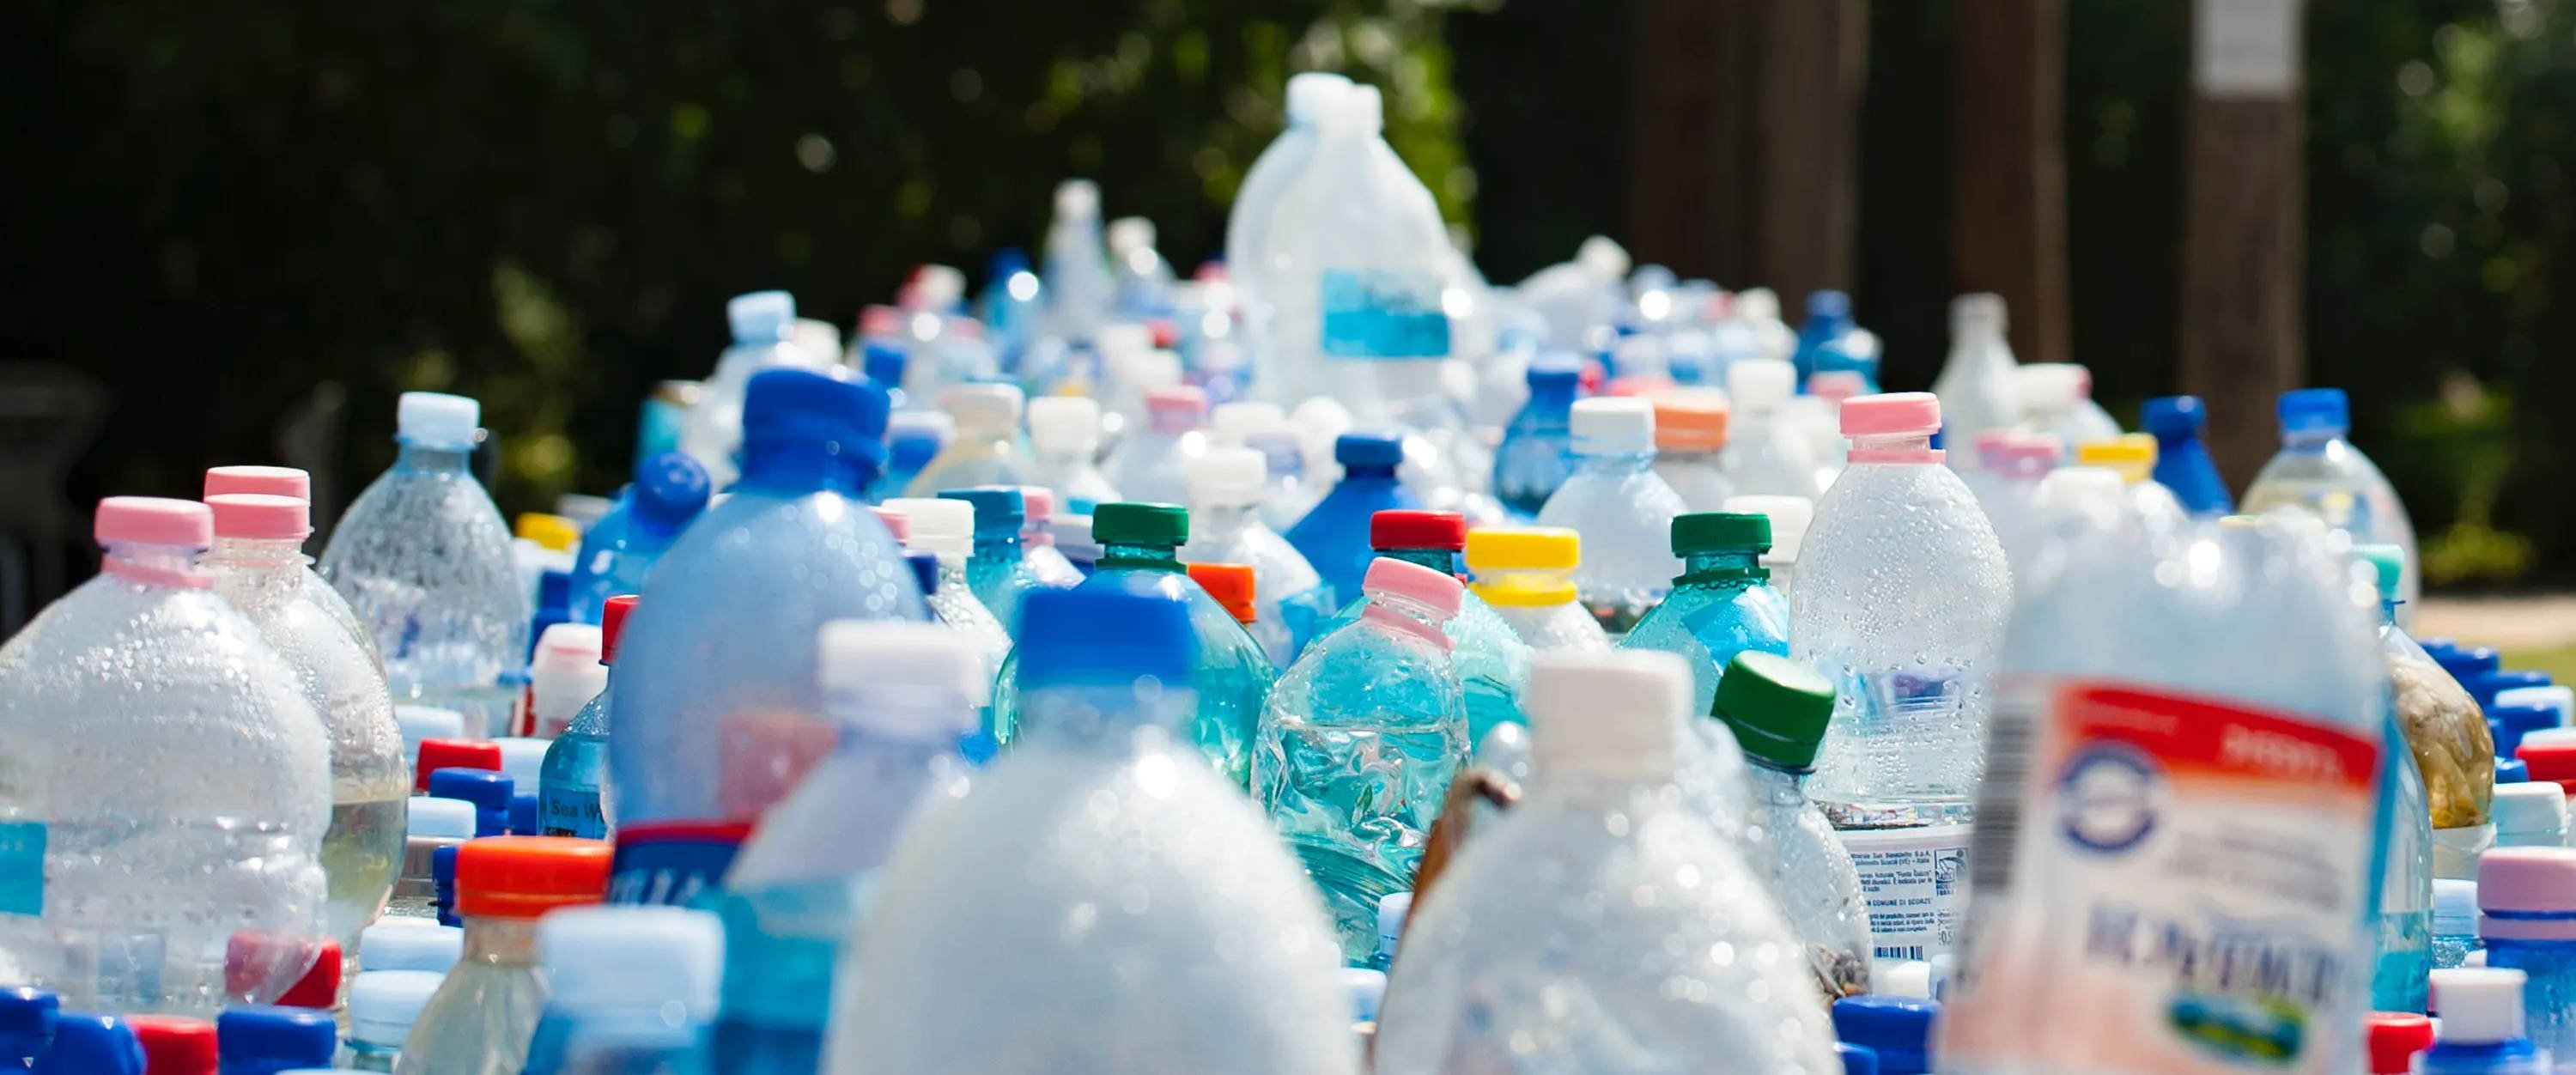 Hundreds of plastic water bottles